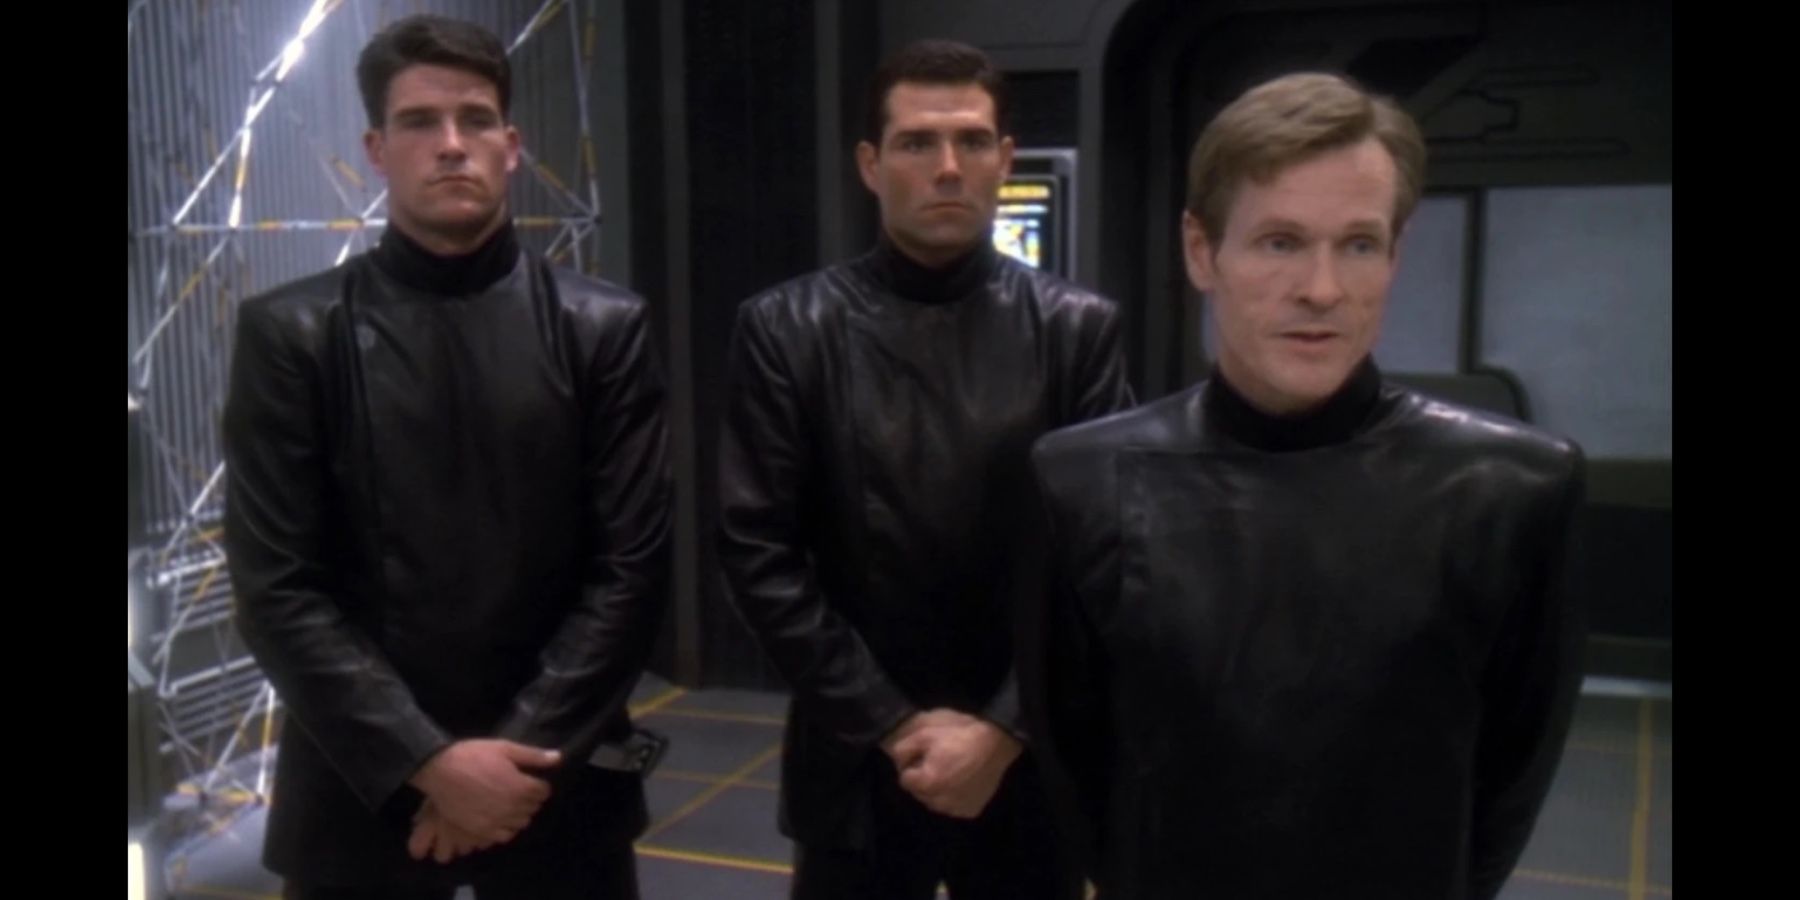 Star Trek: Section 31 officers